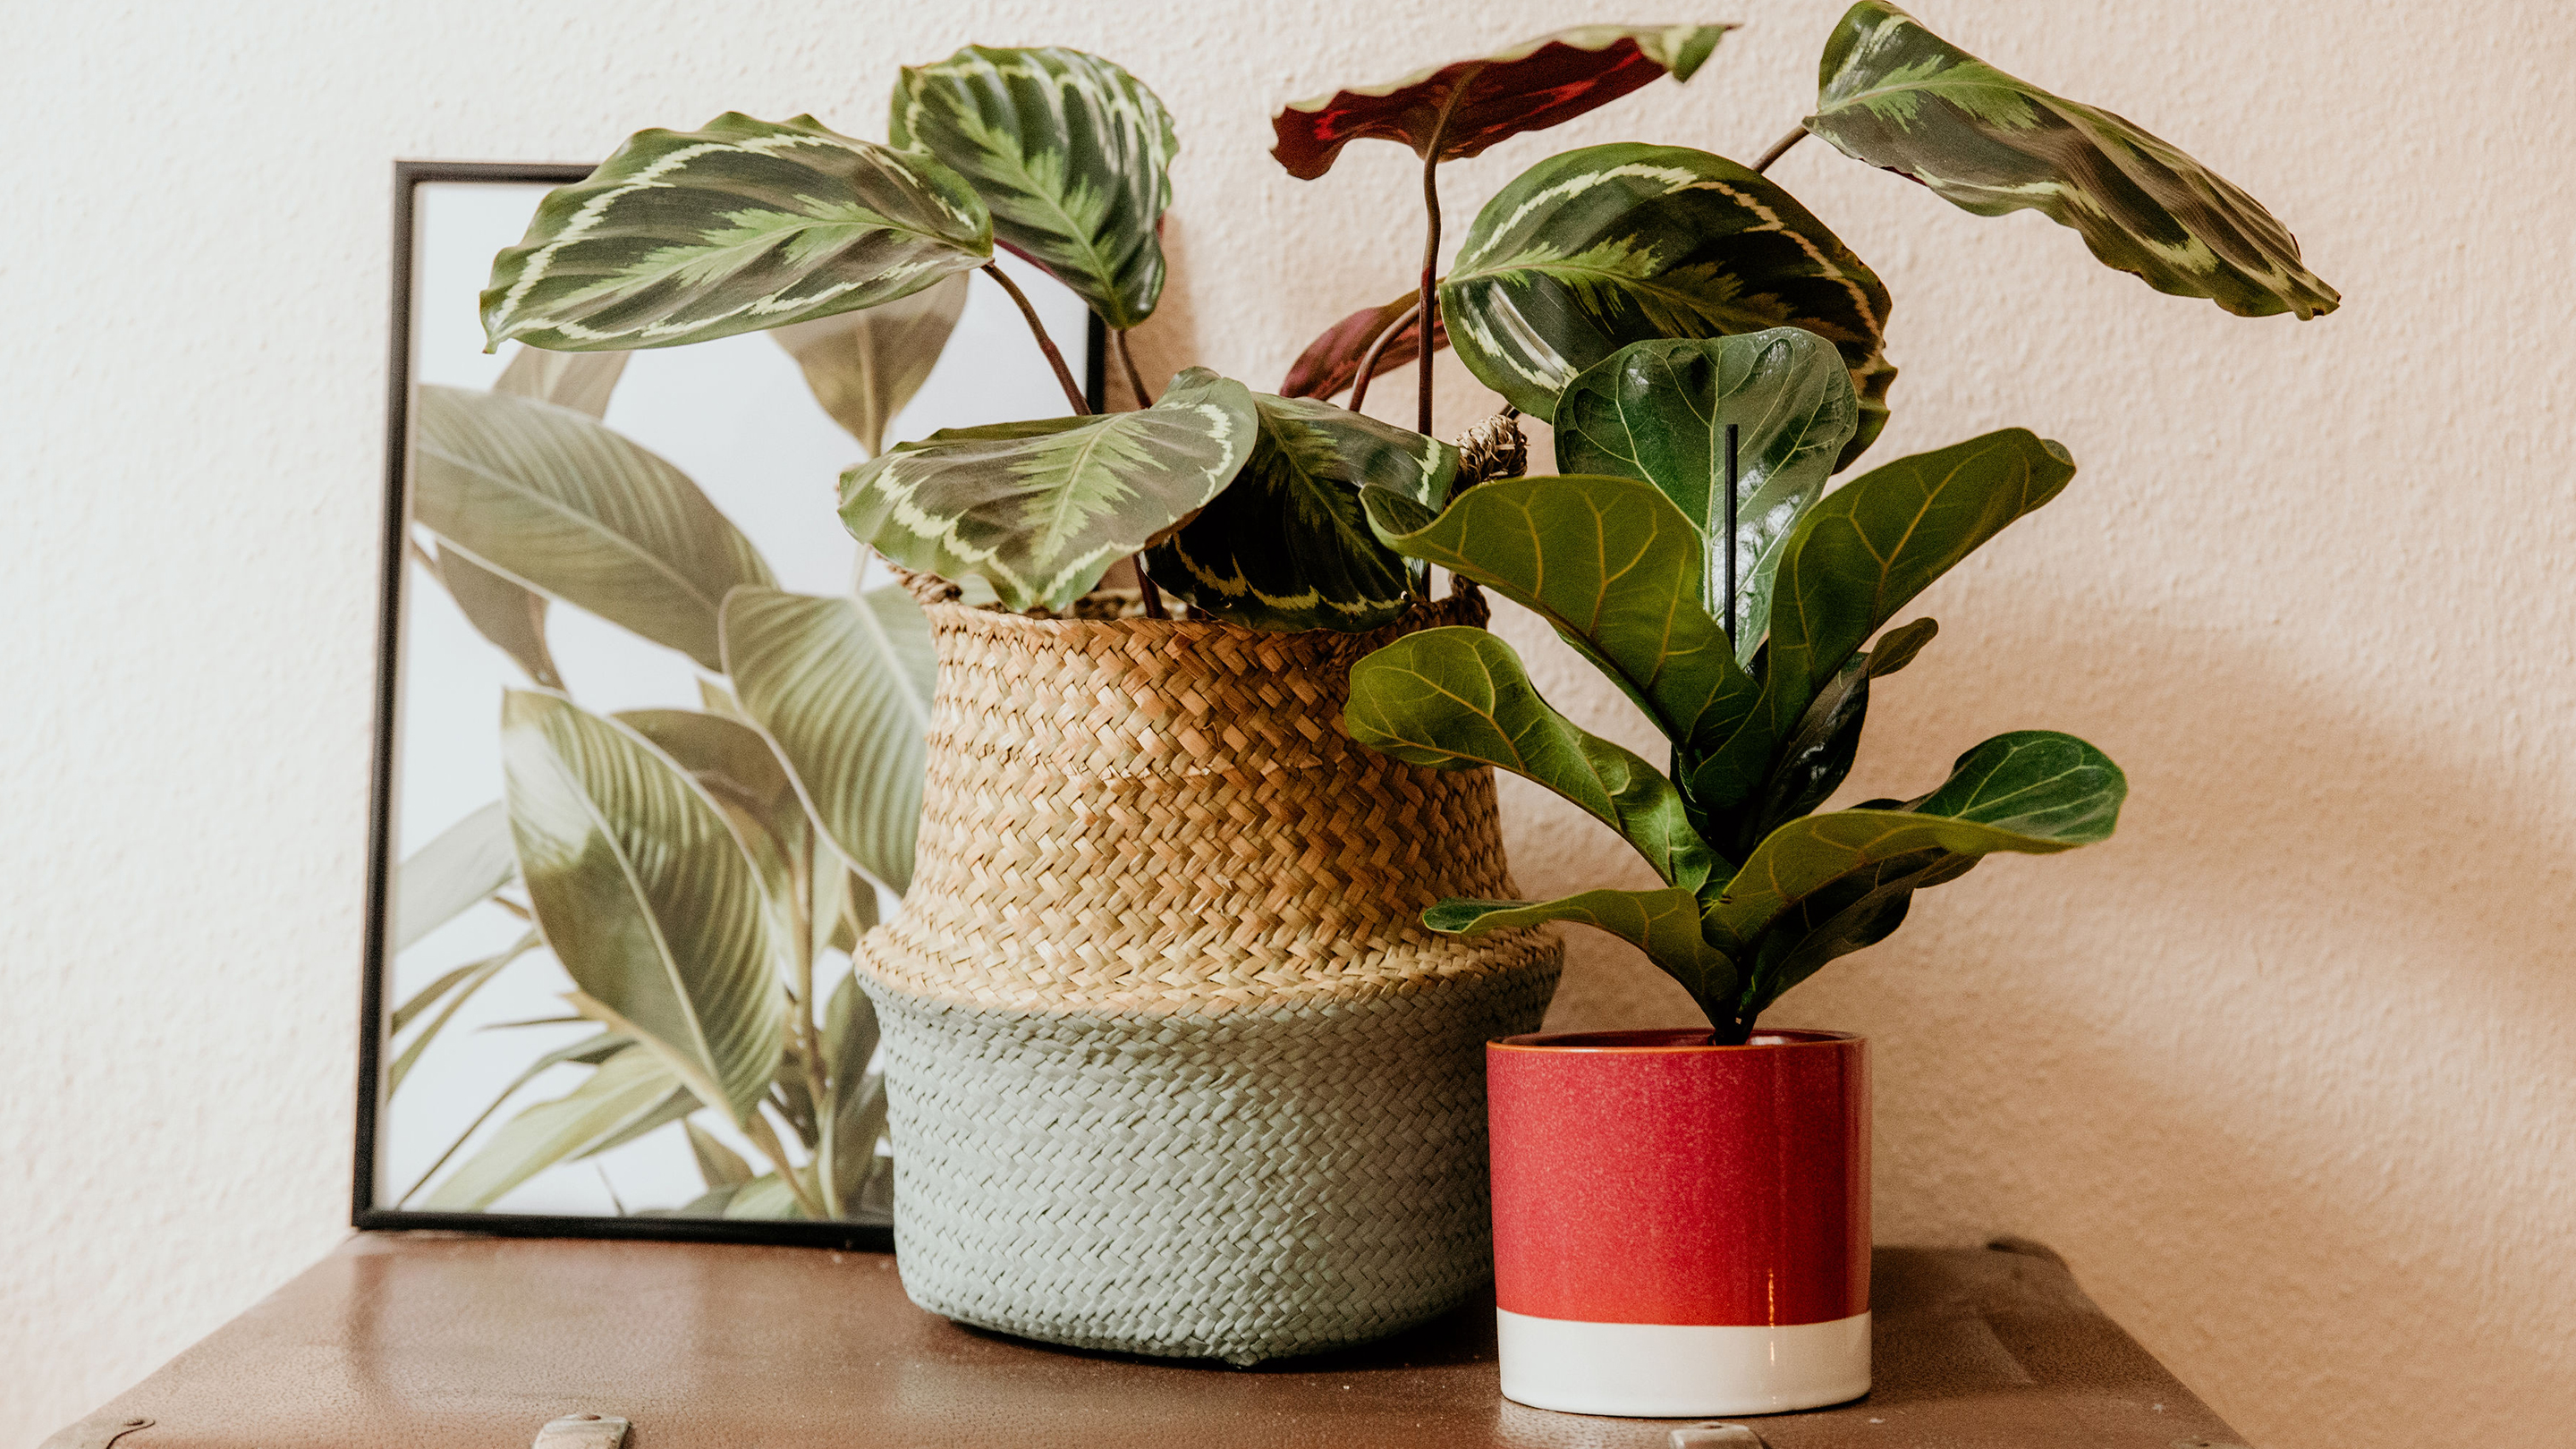 Grünpflanzen machen das Zuhause lebendig (Marke der Vasen und Deko-Objekte: Butlers).